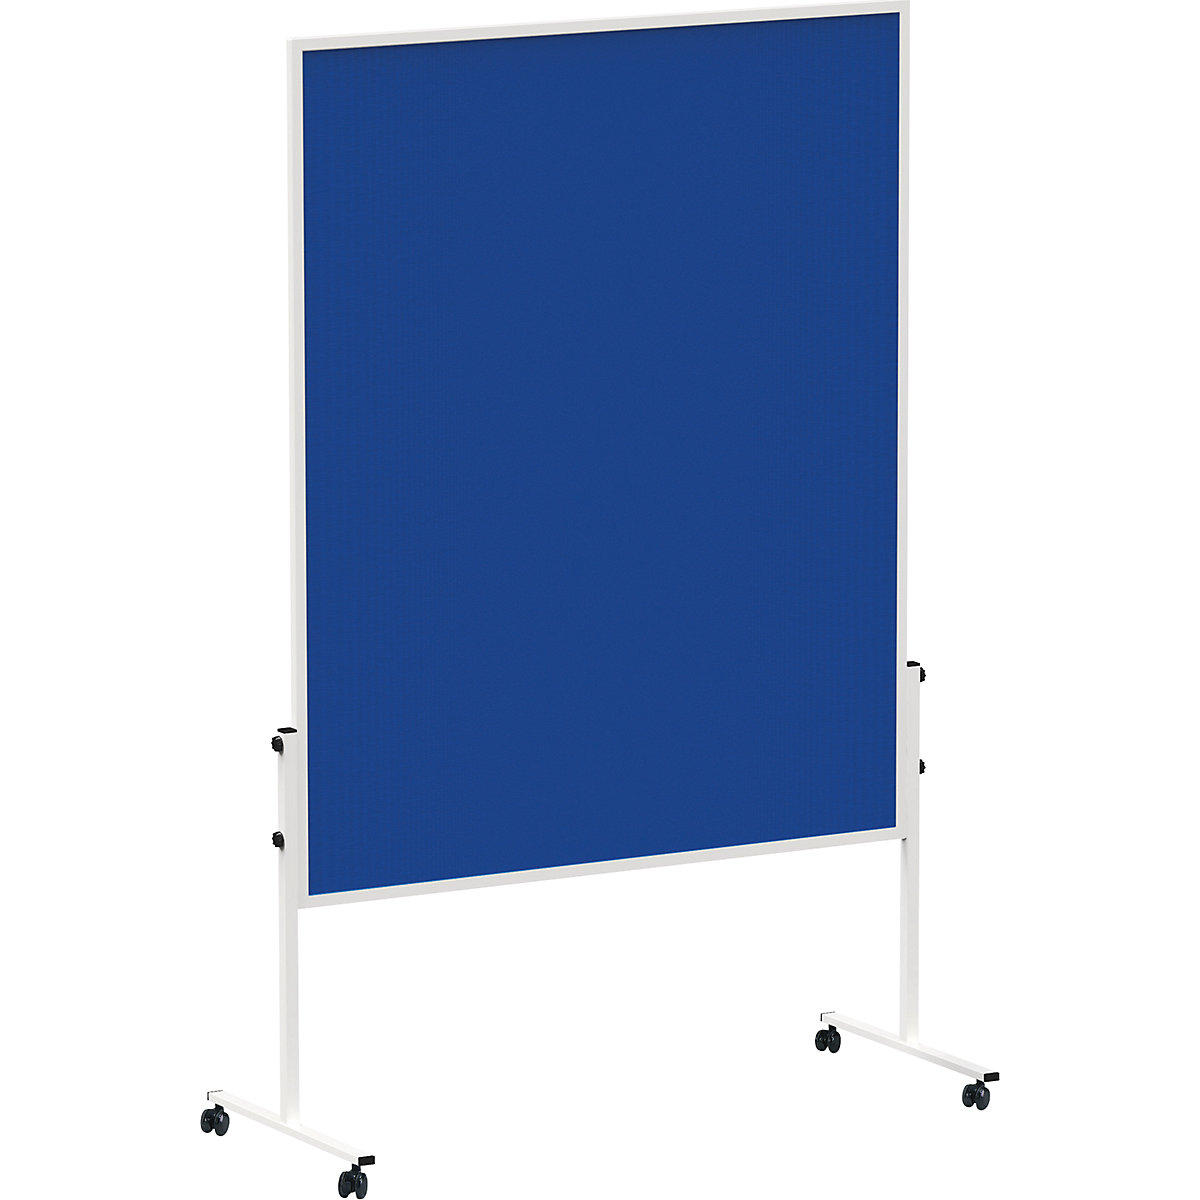 MAULsolid prezentációs tábla – MAUL, mobil, filc, kék színben-2